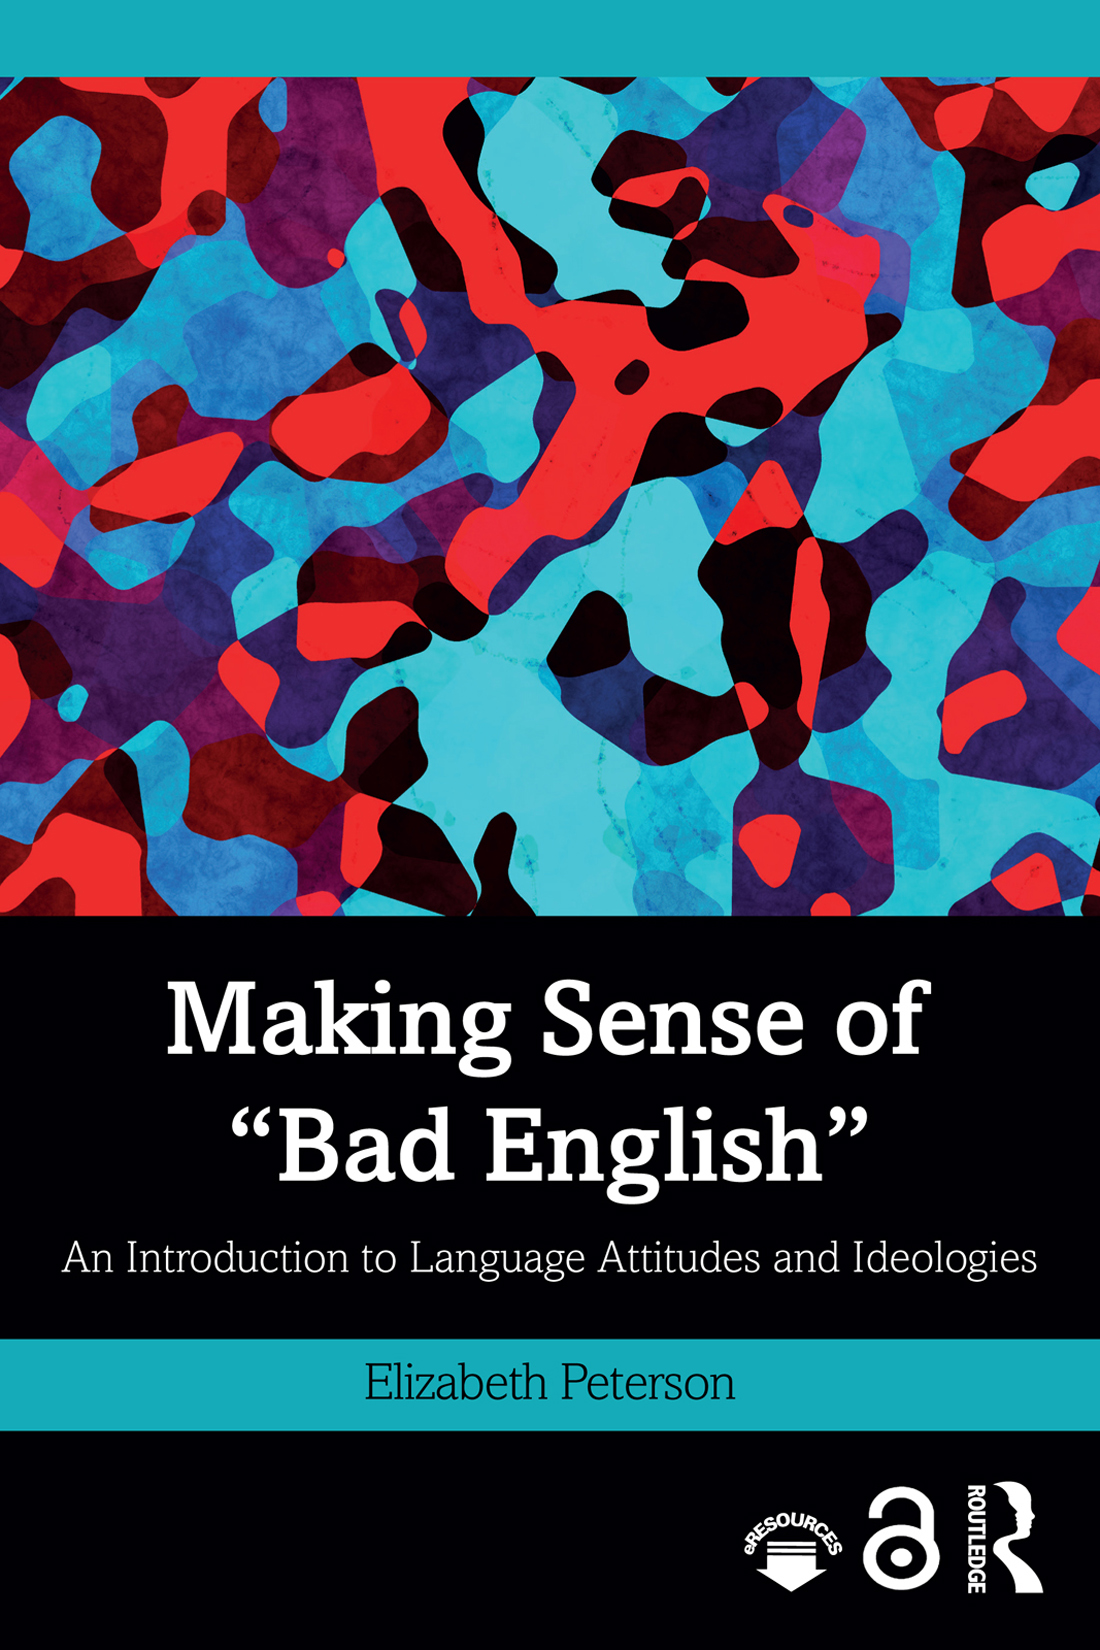 Making Sense of "Bad English"